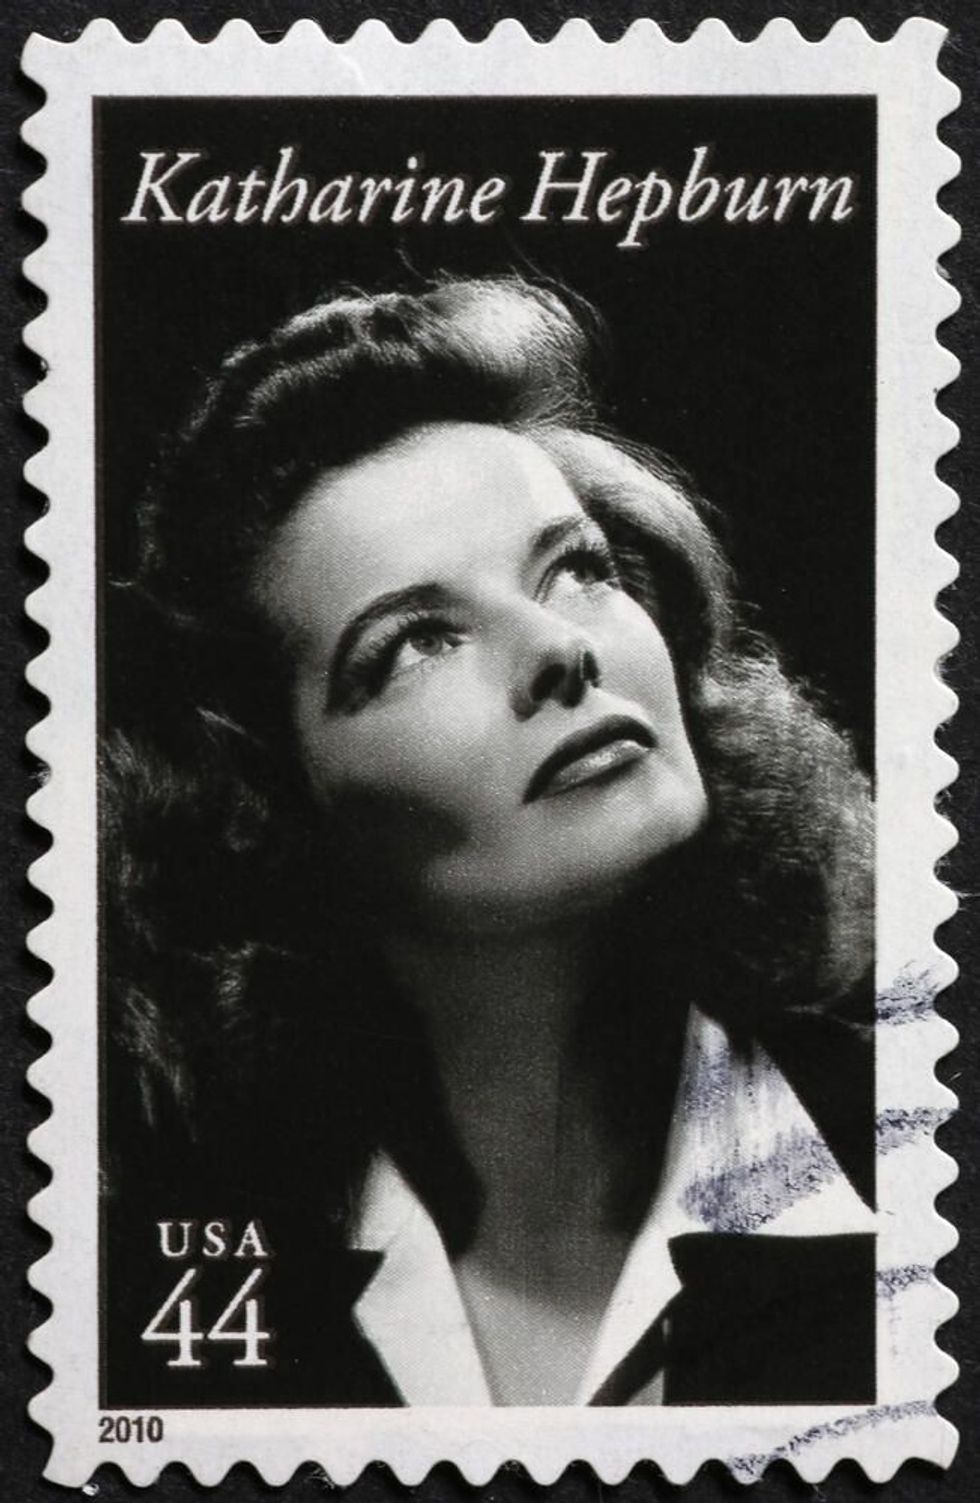 Katherine Hepburn on american postage stamp